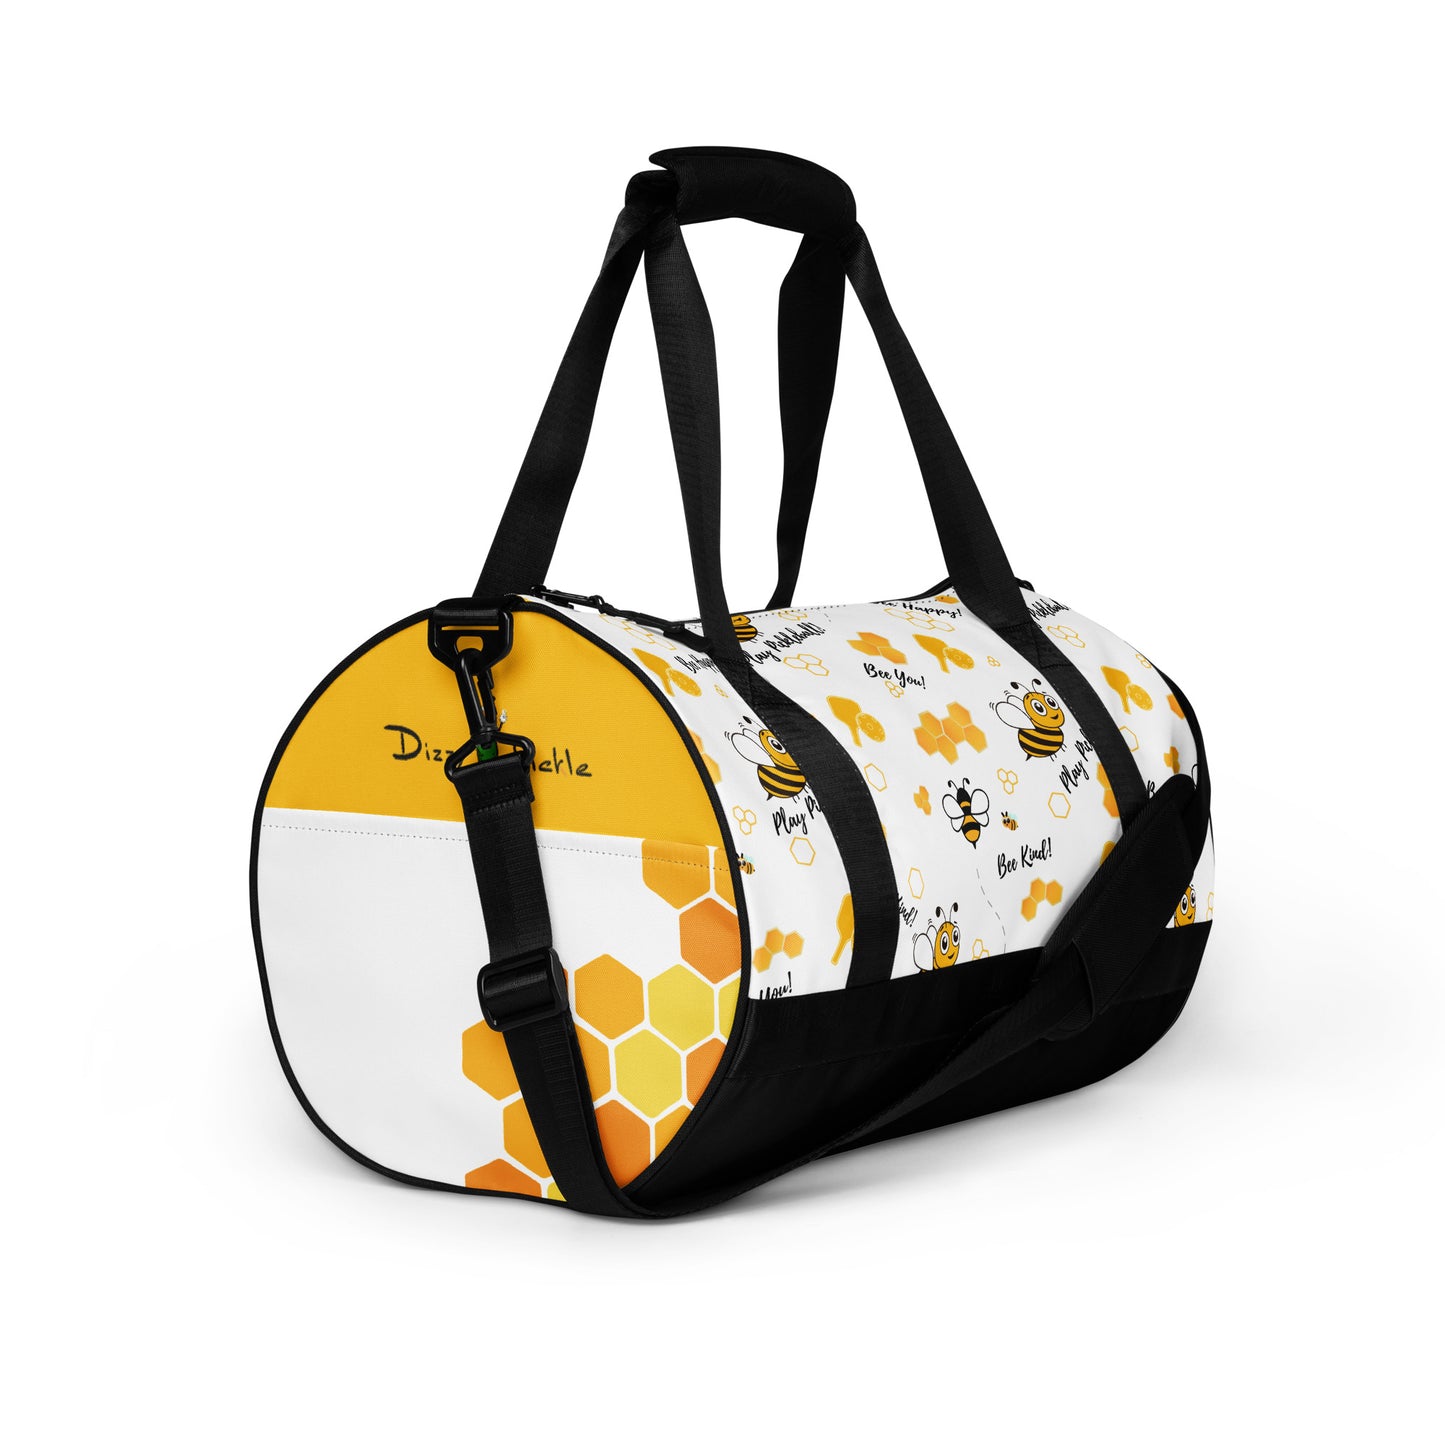 Sandy - Pickleball Gym Bag by Dizzy Pickle